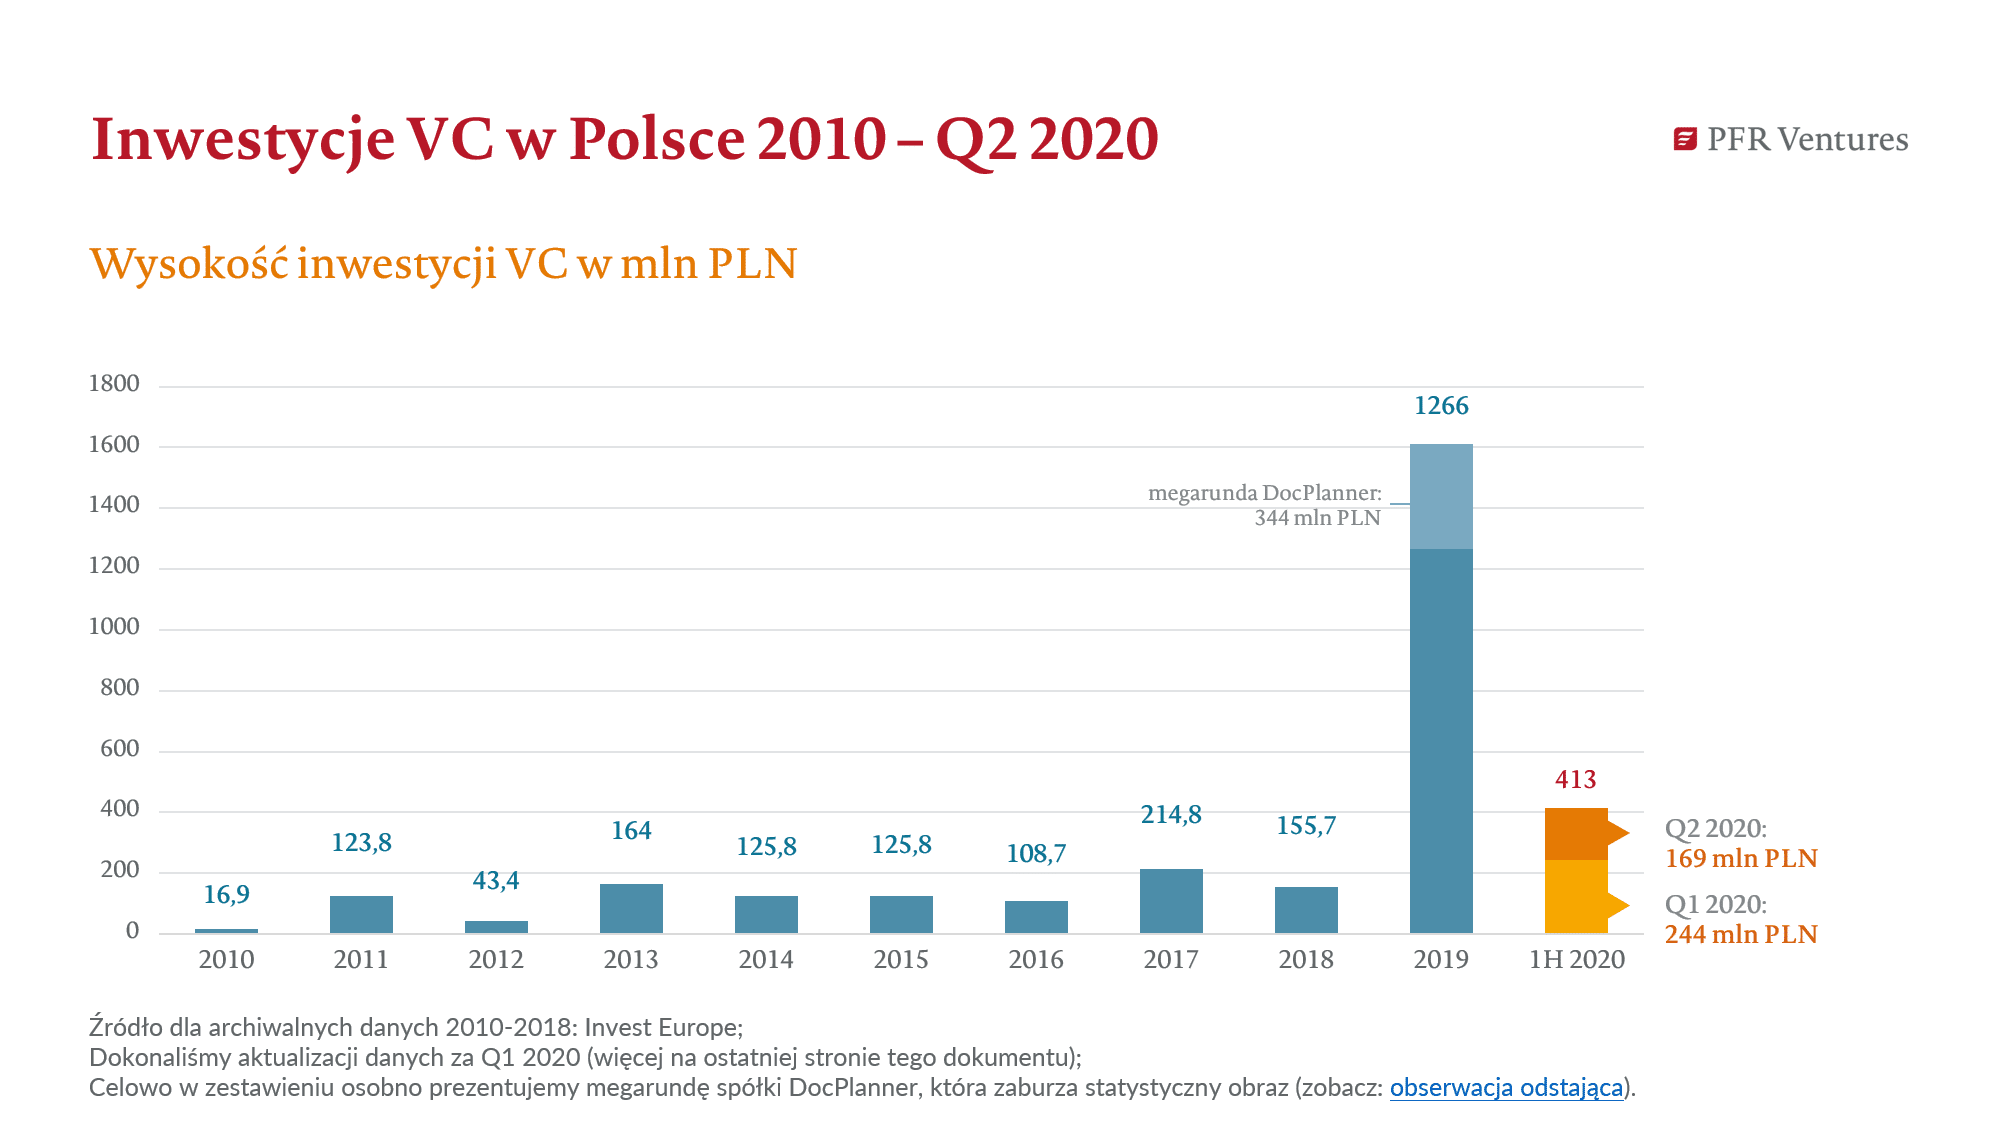 Wartość inwestycji venture capital w Polsce w drugim kwartale 2020